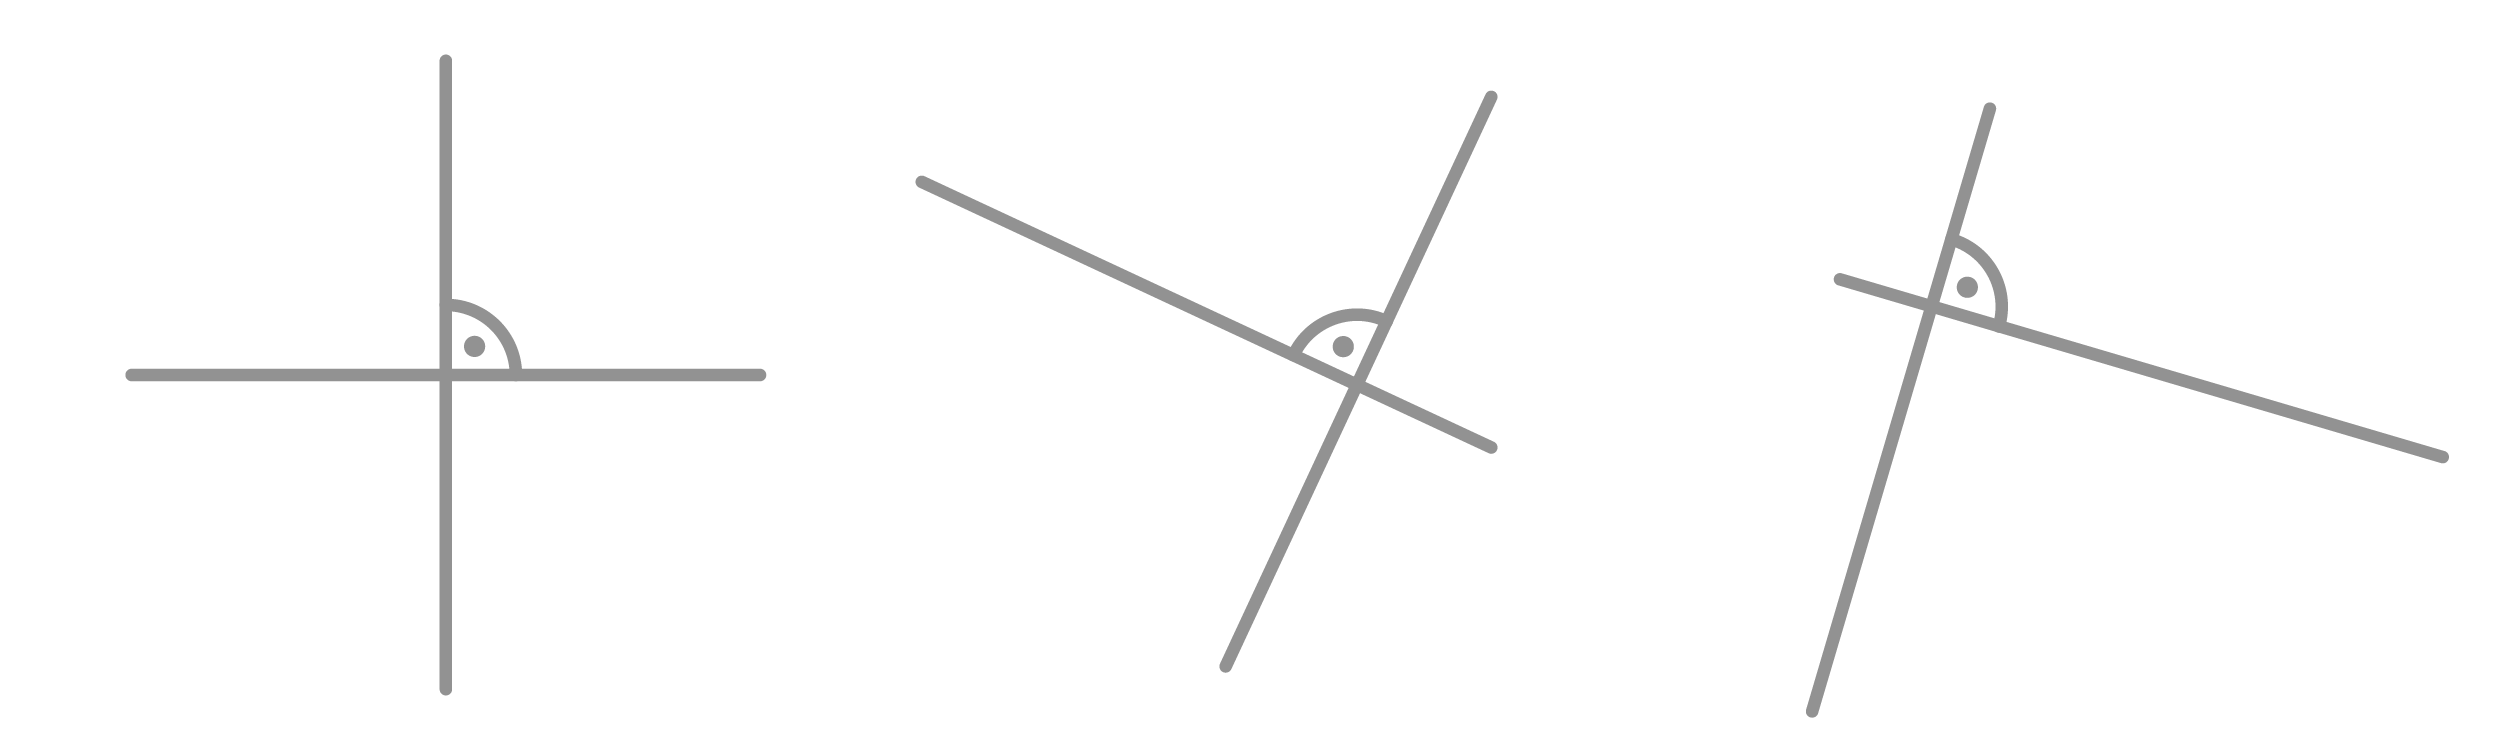 Matemáticas; Elementos geométricos; 1. ESO; Punto, recta y segmento en el plano 2D